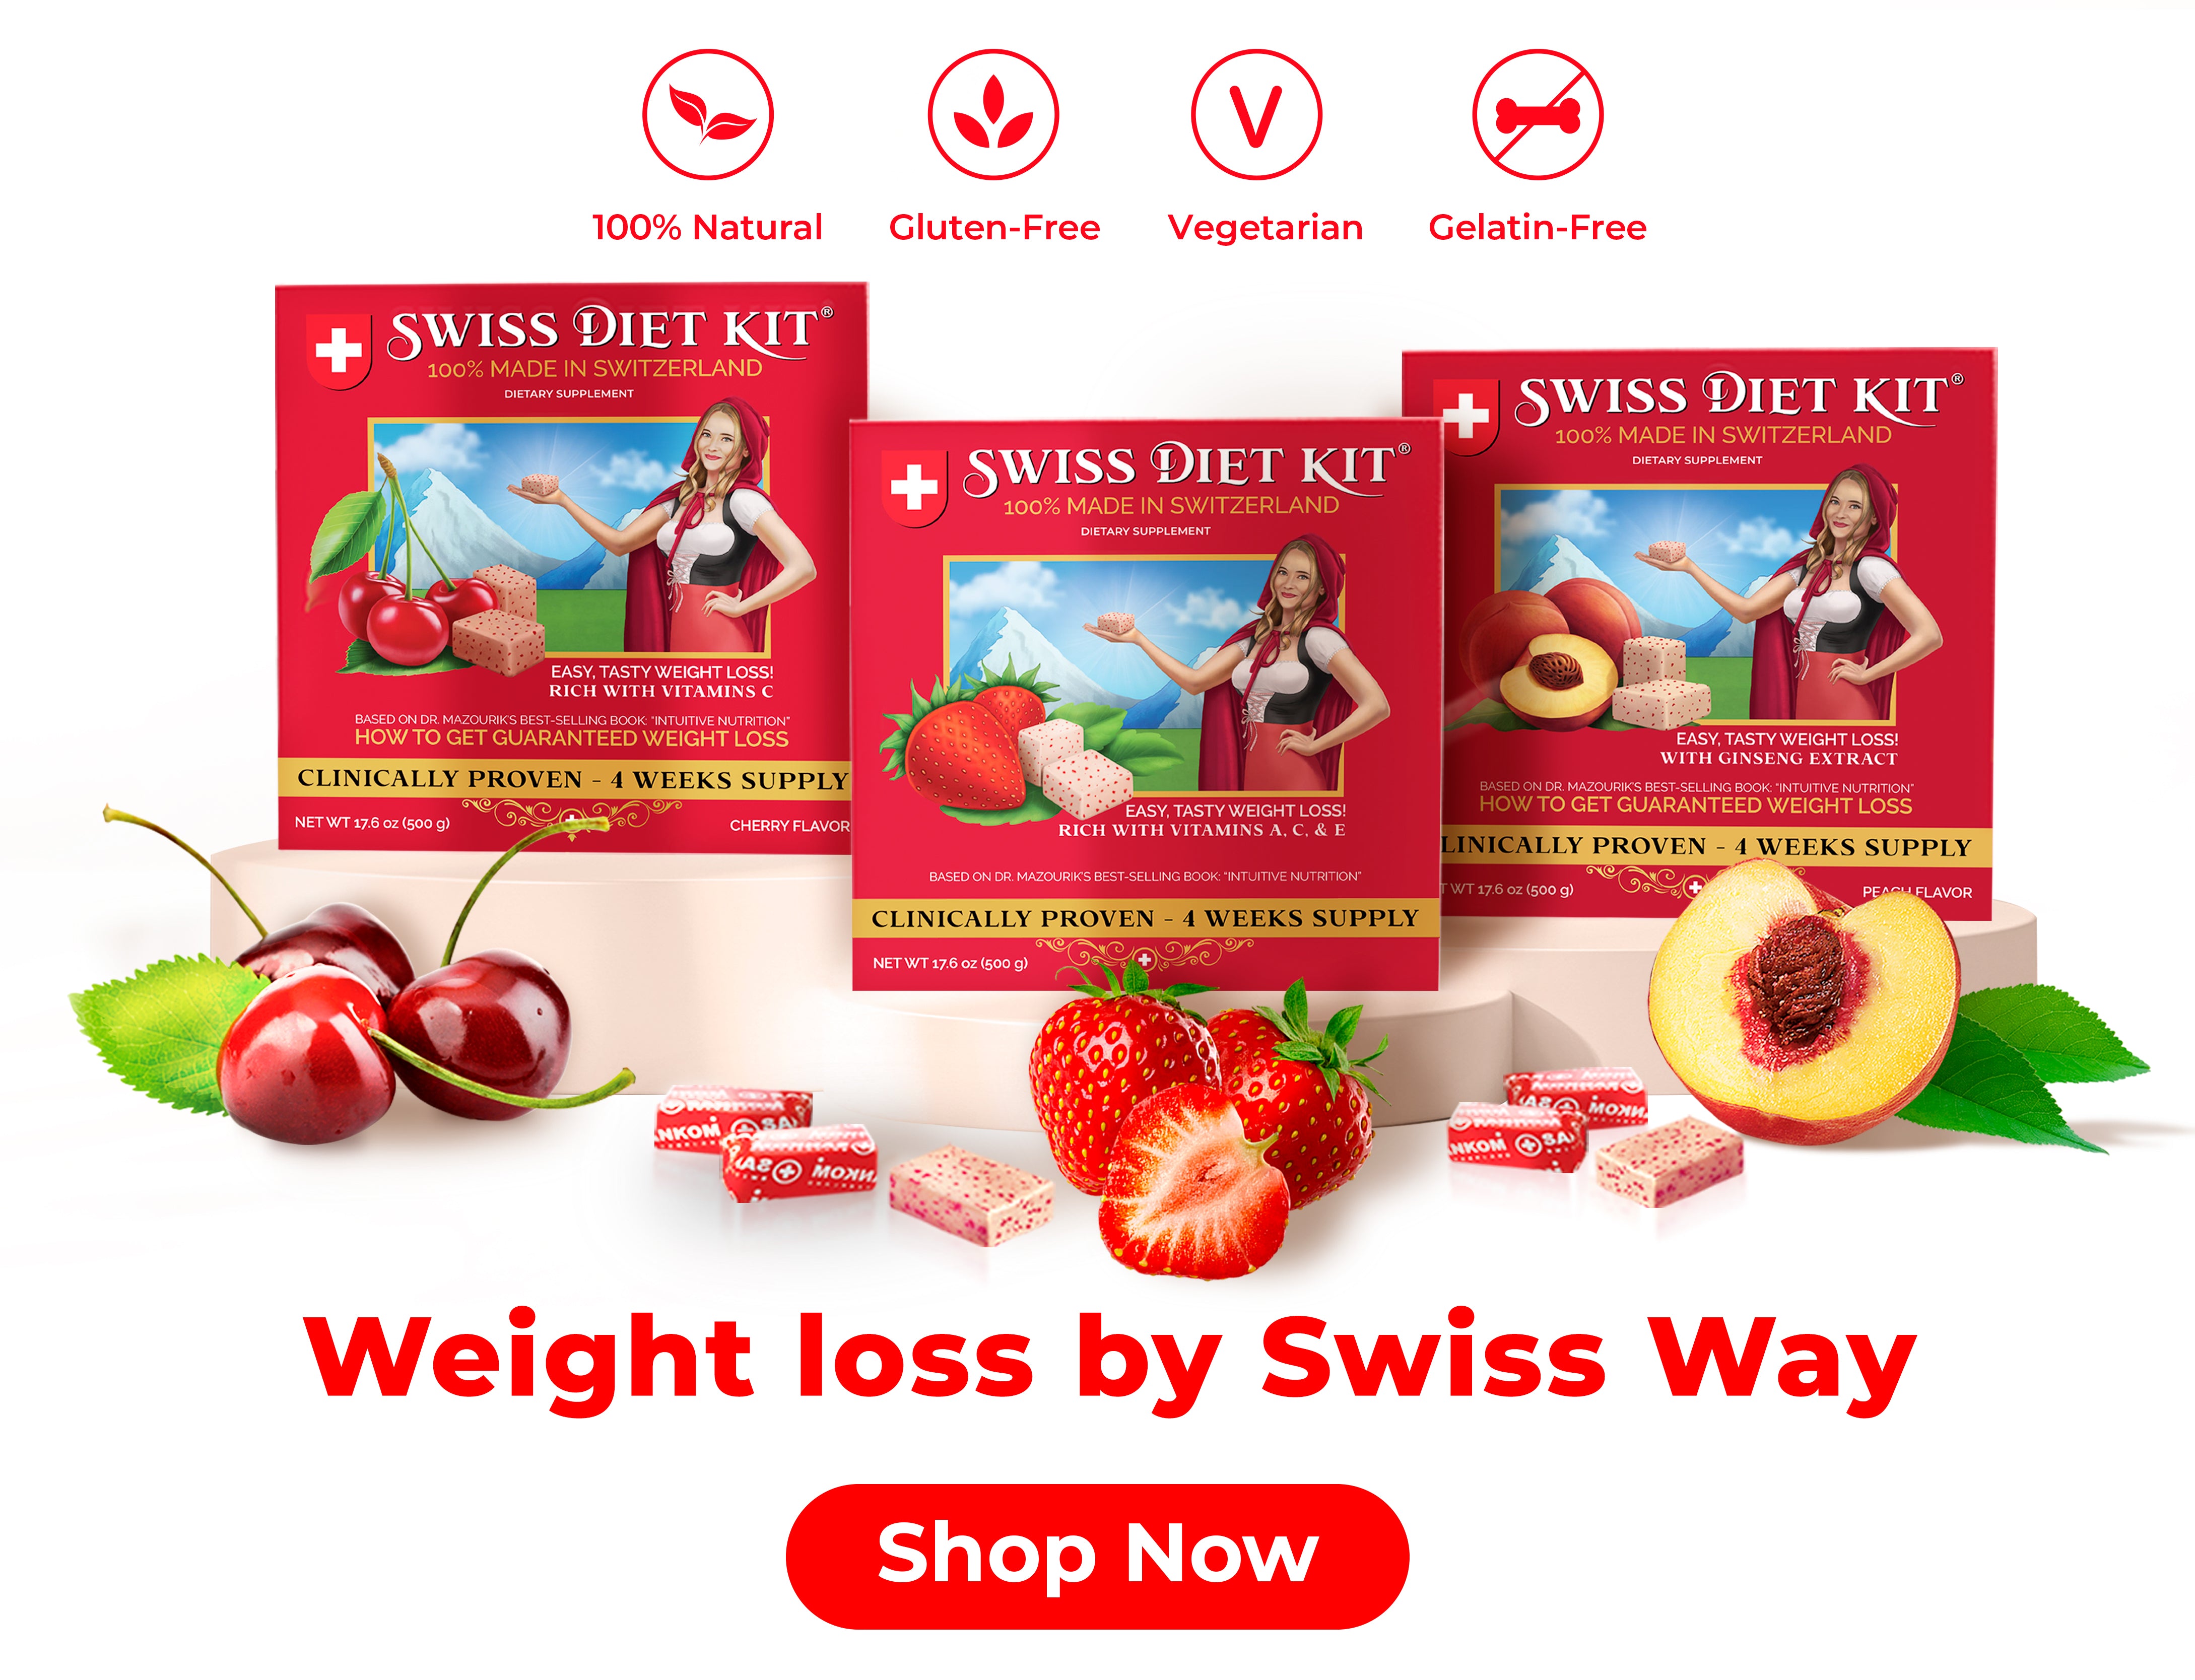 Swiss Diet Kit- PEACH, 4 weeks set- (500g) – Swiss Diet Kit by Dr. Mazourik